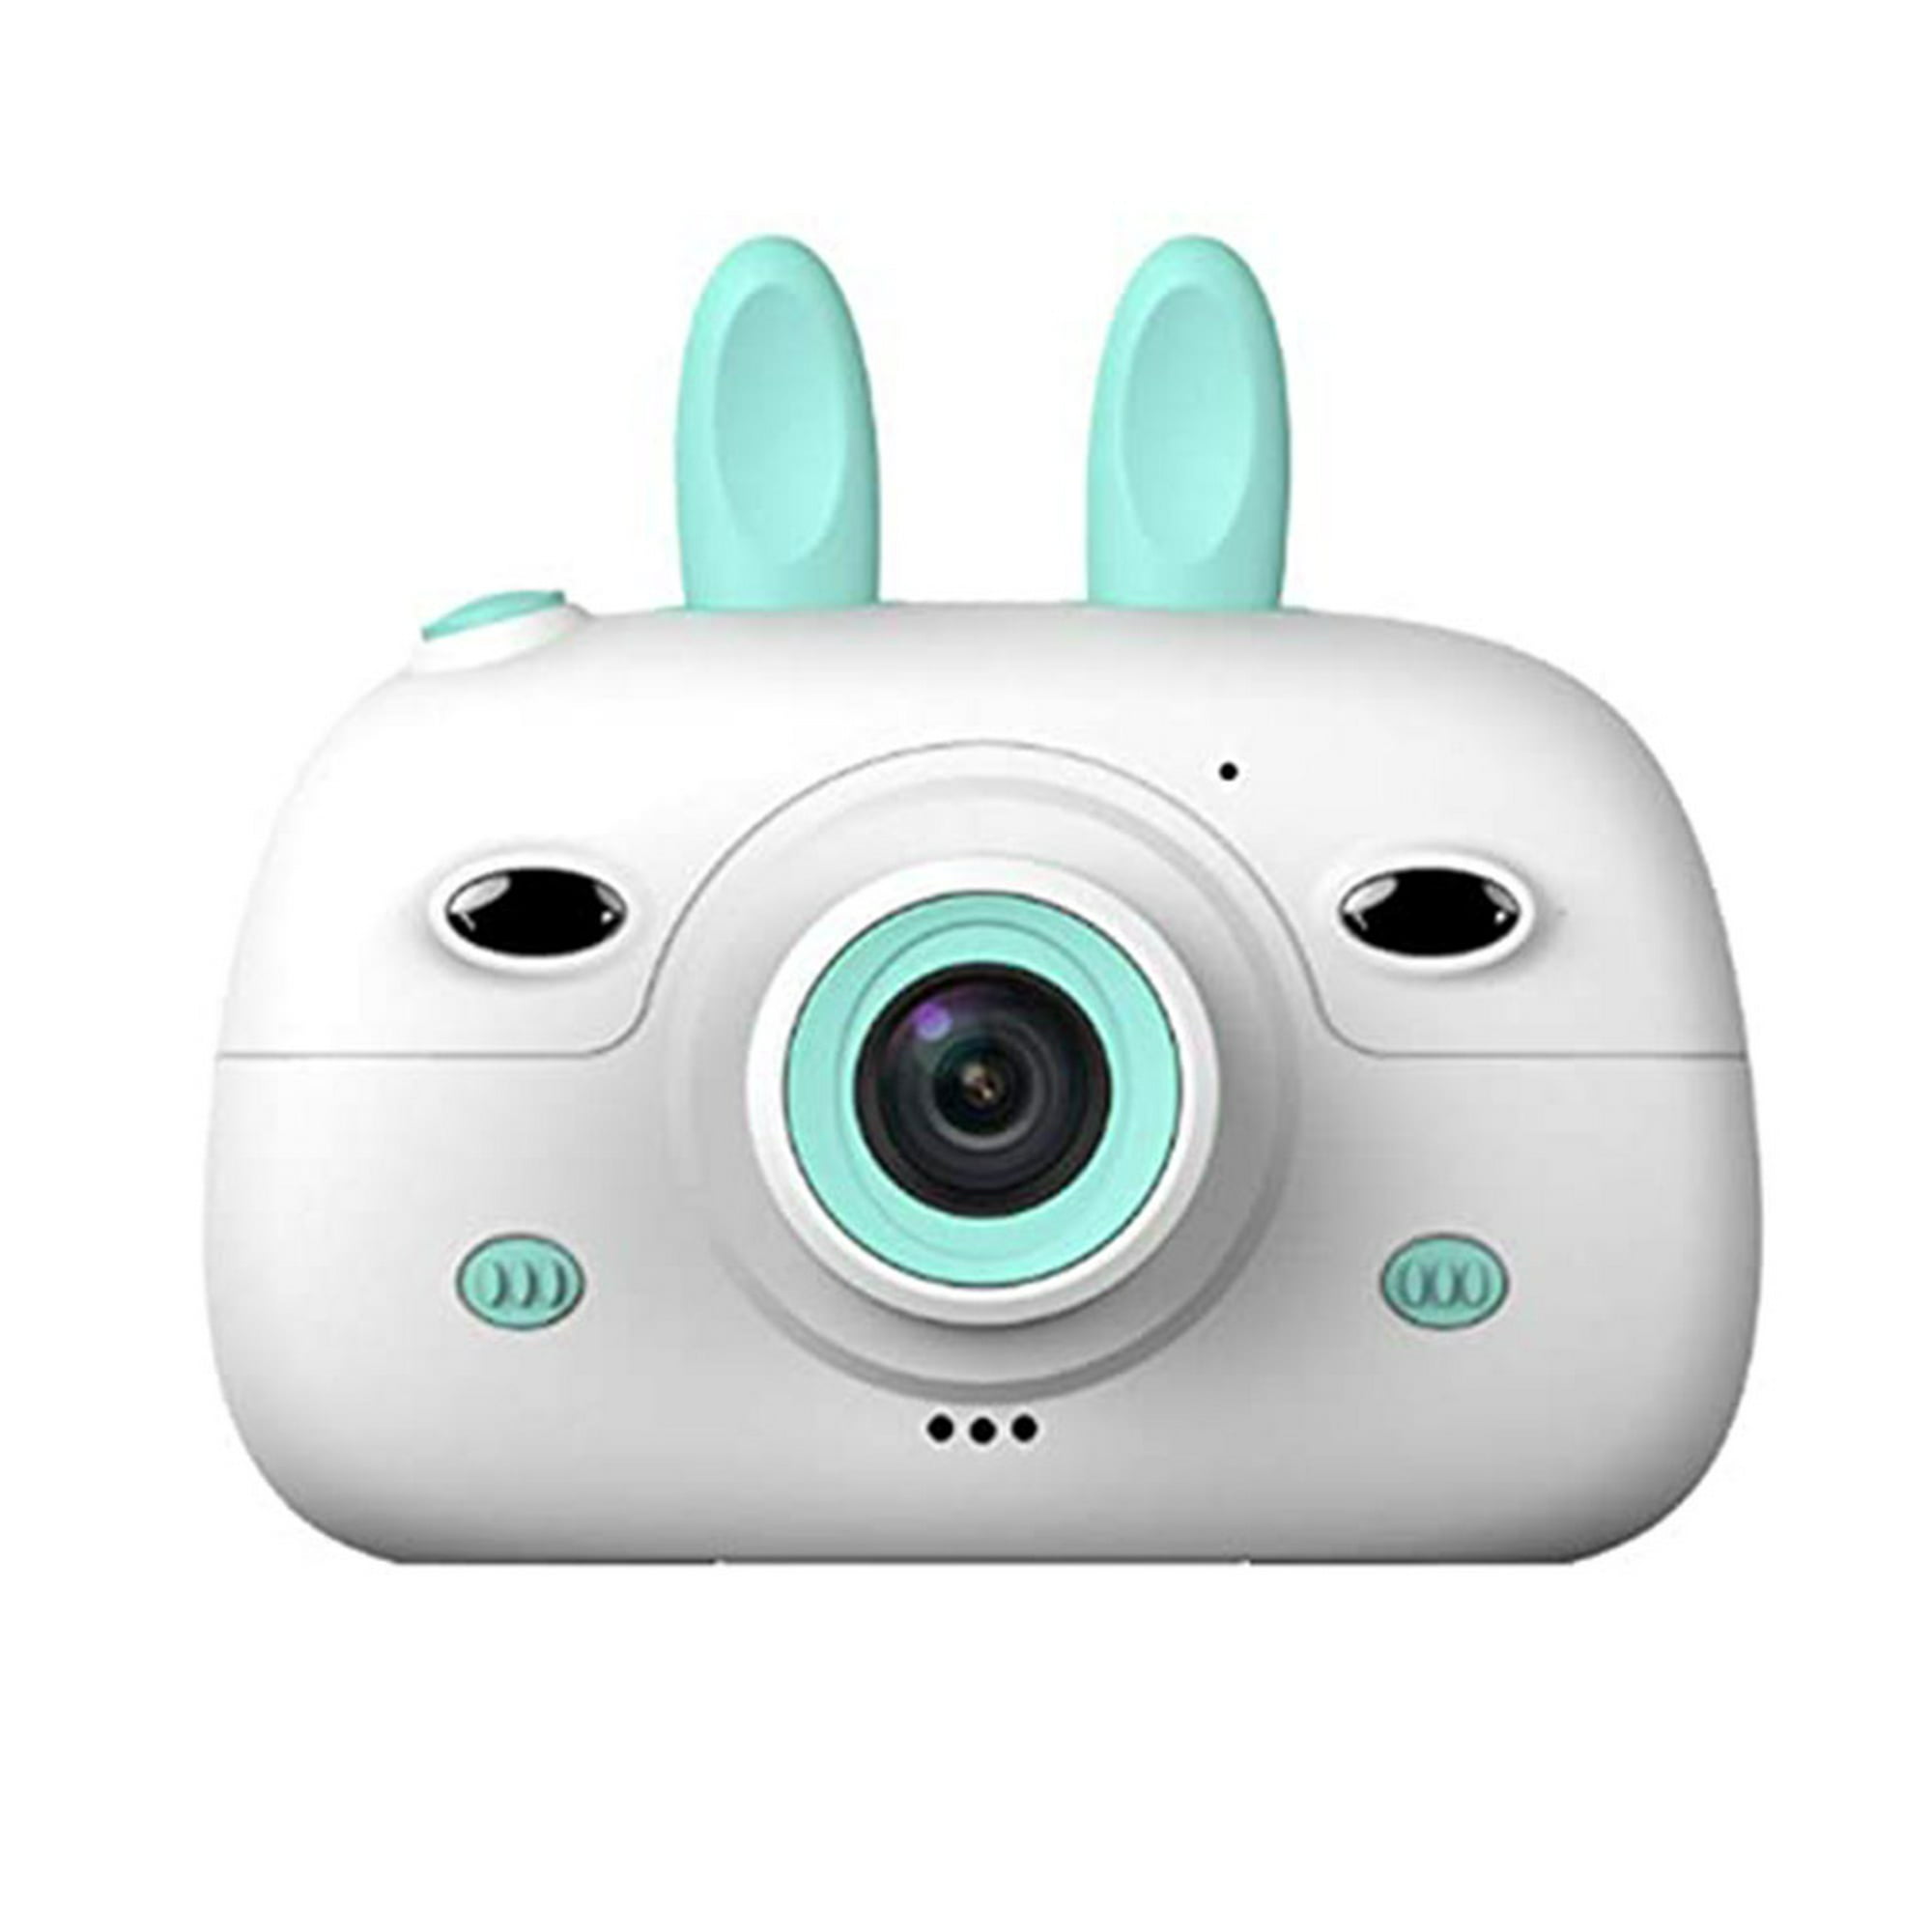 Camara Infantil Conejo Azul - Cámara Digital Para Niños Forma De Conejo Azul